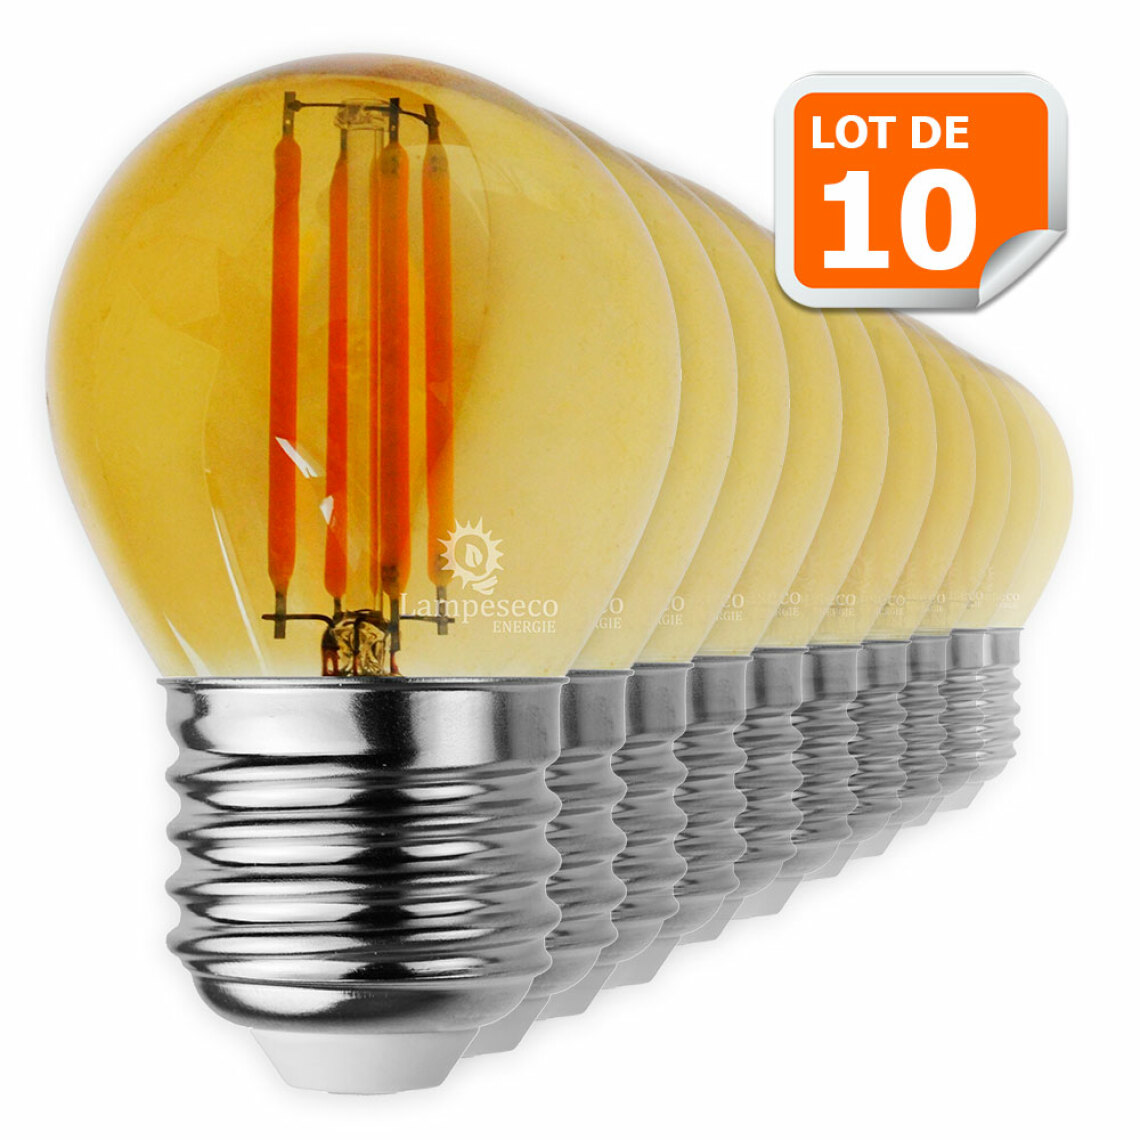 Lampesecoenergie - Lot de 10 Ampoules Led Filament forme G45 4 Watt (éq 42 watts) Culot E27 - Ampoules LED